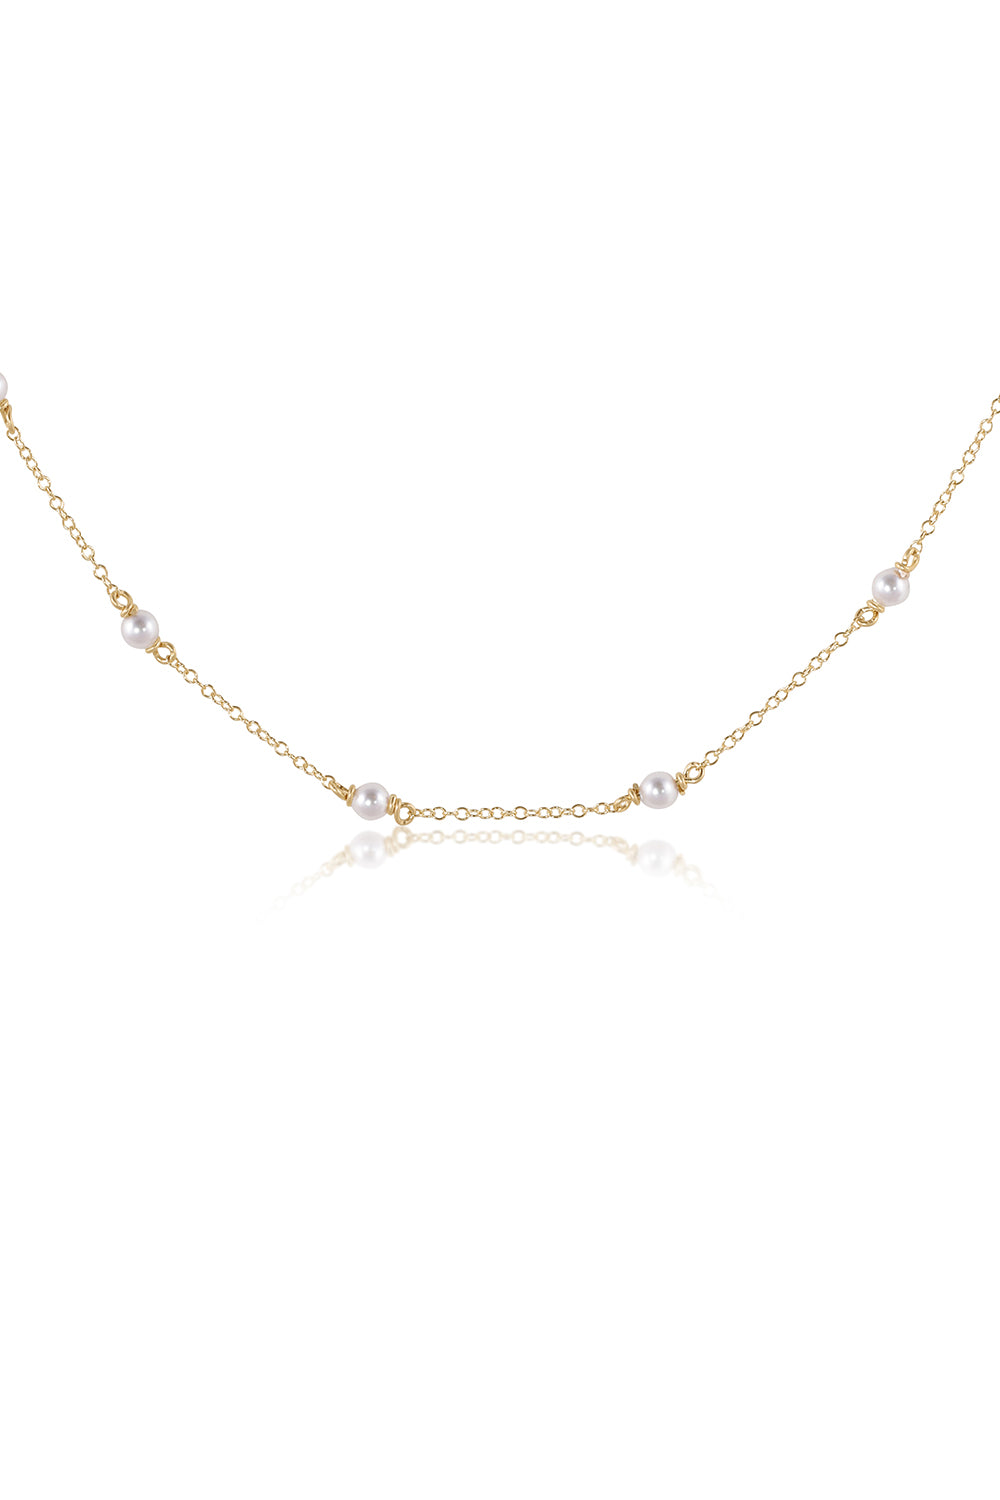 EN Simplicity Choker Necklace - Pearl